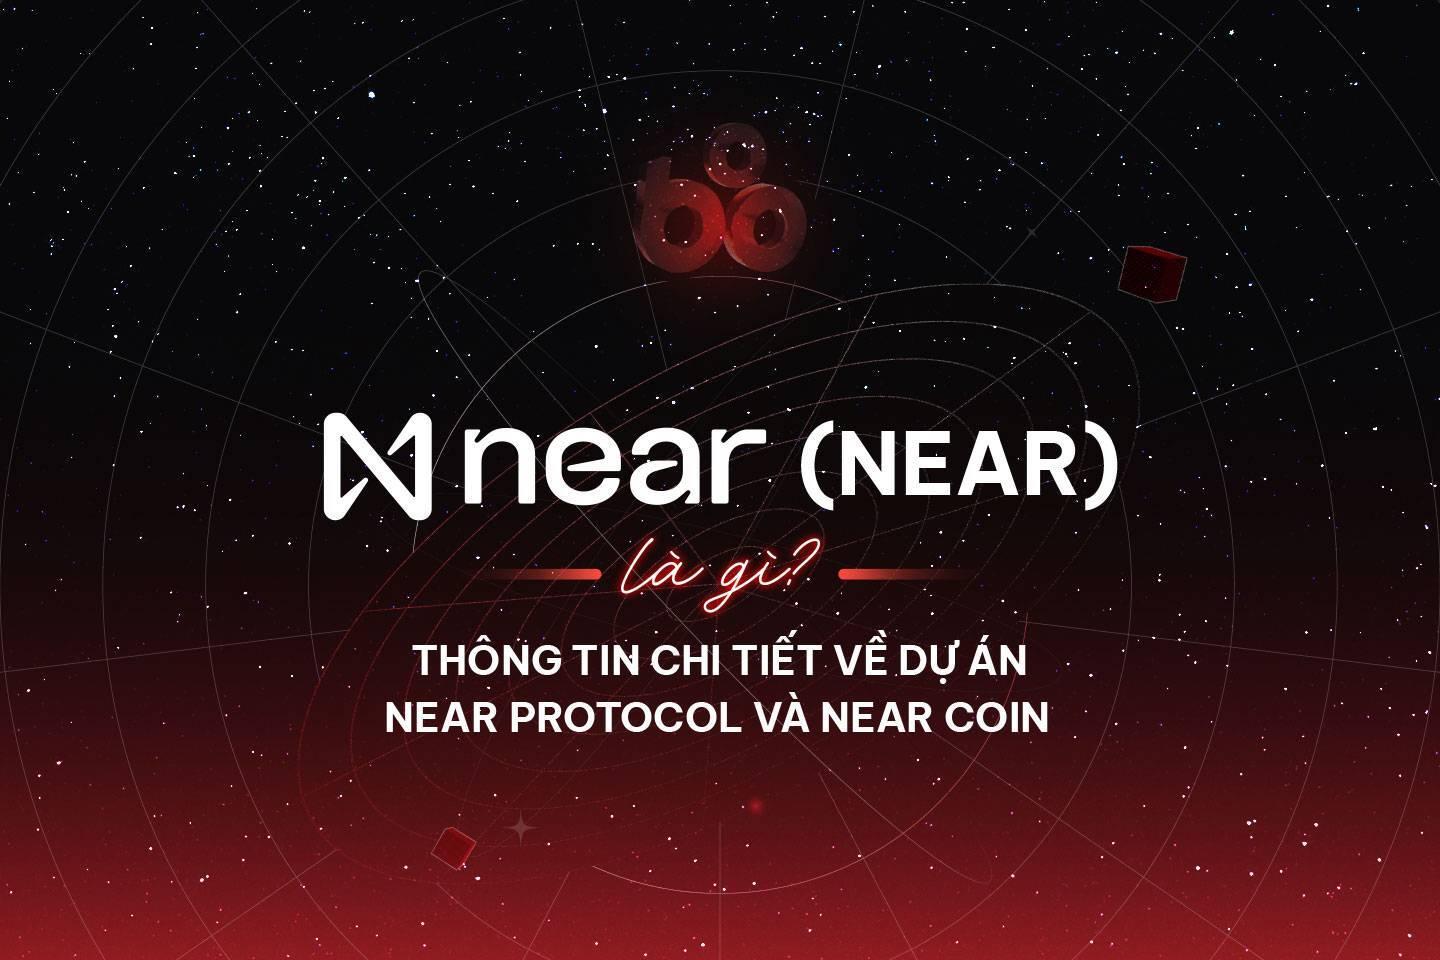 near-protocol-near-la-gi-thong-tin-chi-tiet-ve-du-an-near-protocol-va-near-coin